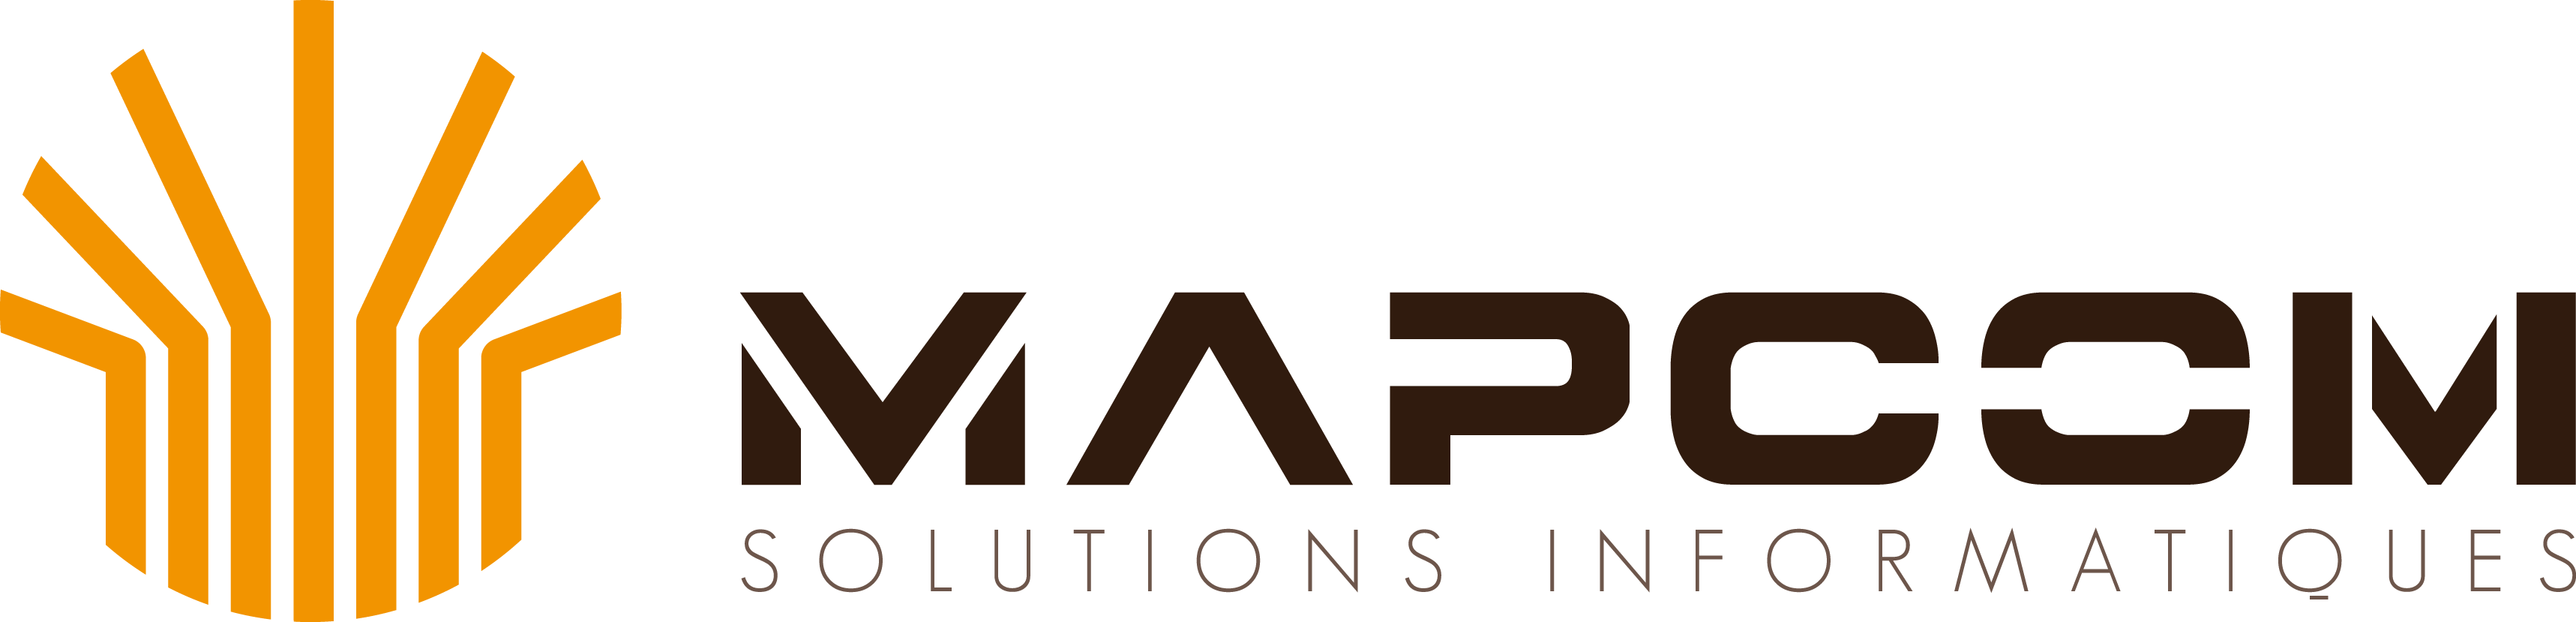 Mapcom Logo - Mapcom